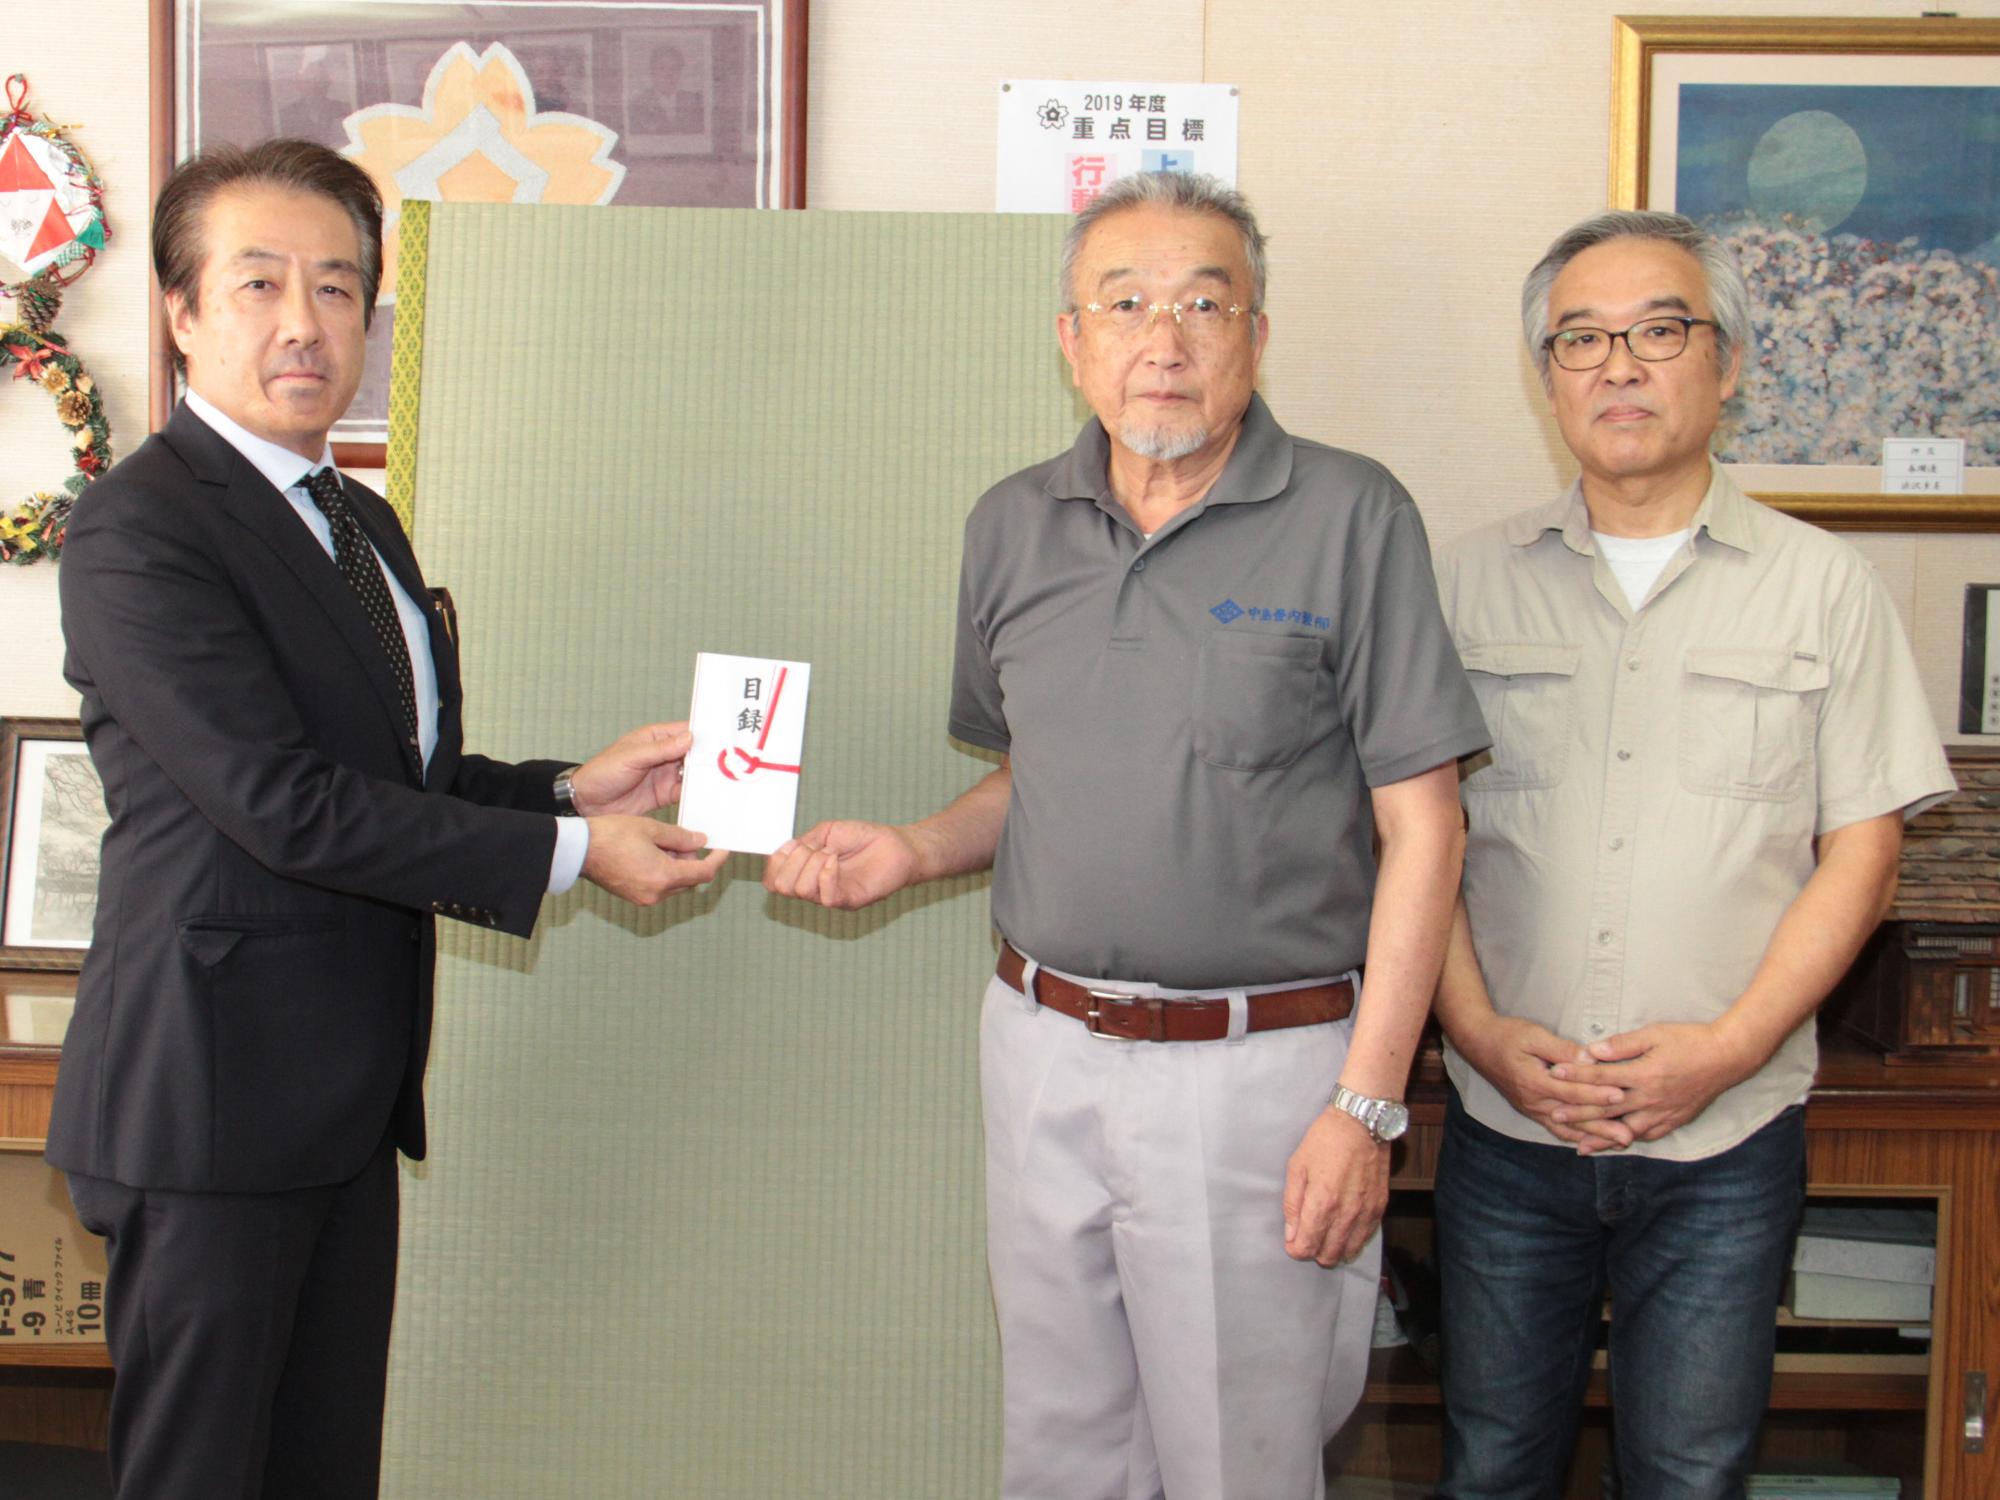 中島三喜県畳工業組合理事長と伏見健司有限会社フシミ代表取締役が畳を寄贈する様子